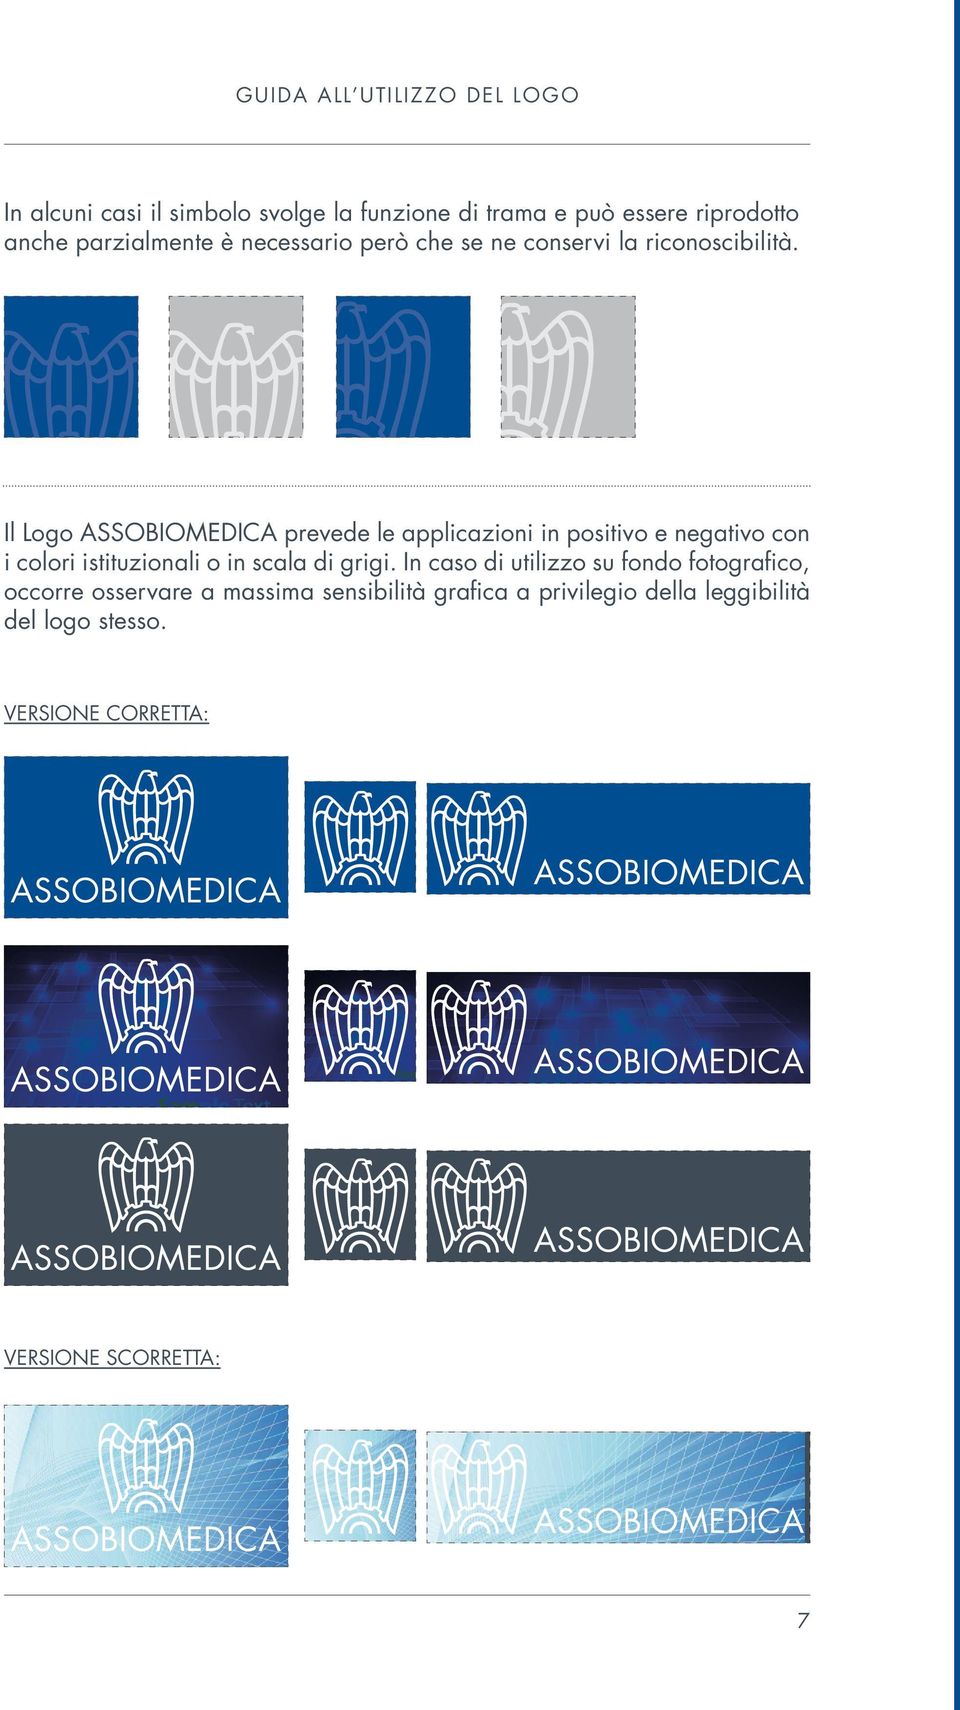 Il Logo ASSOBIOMEDICA prevede le applicazioni in positivo e negativo con i colori istituzionali o in scala di grigi.